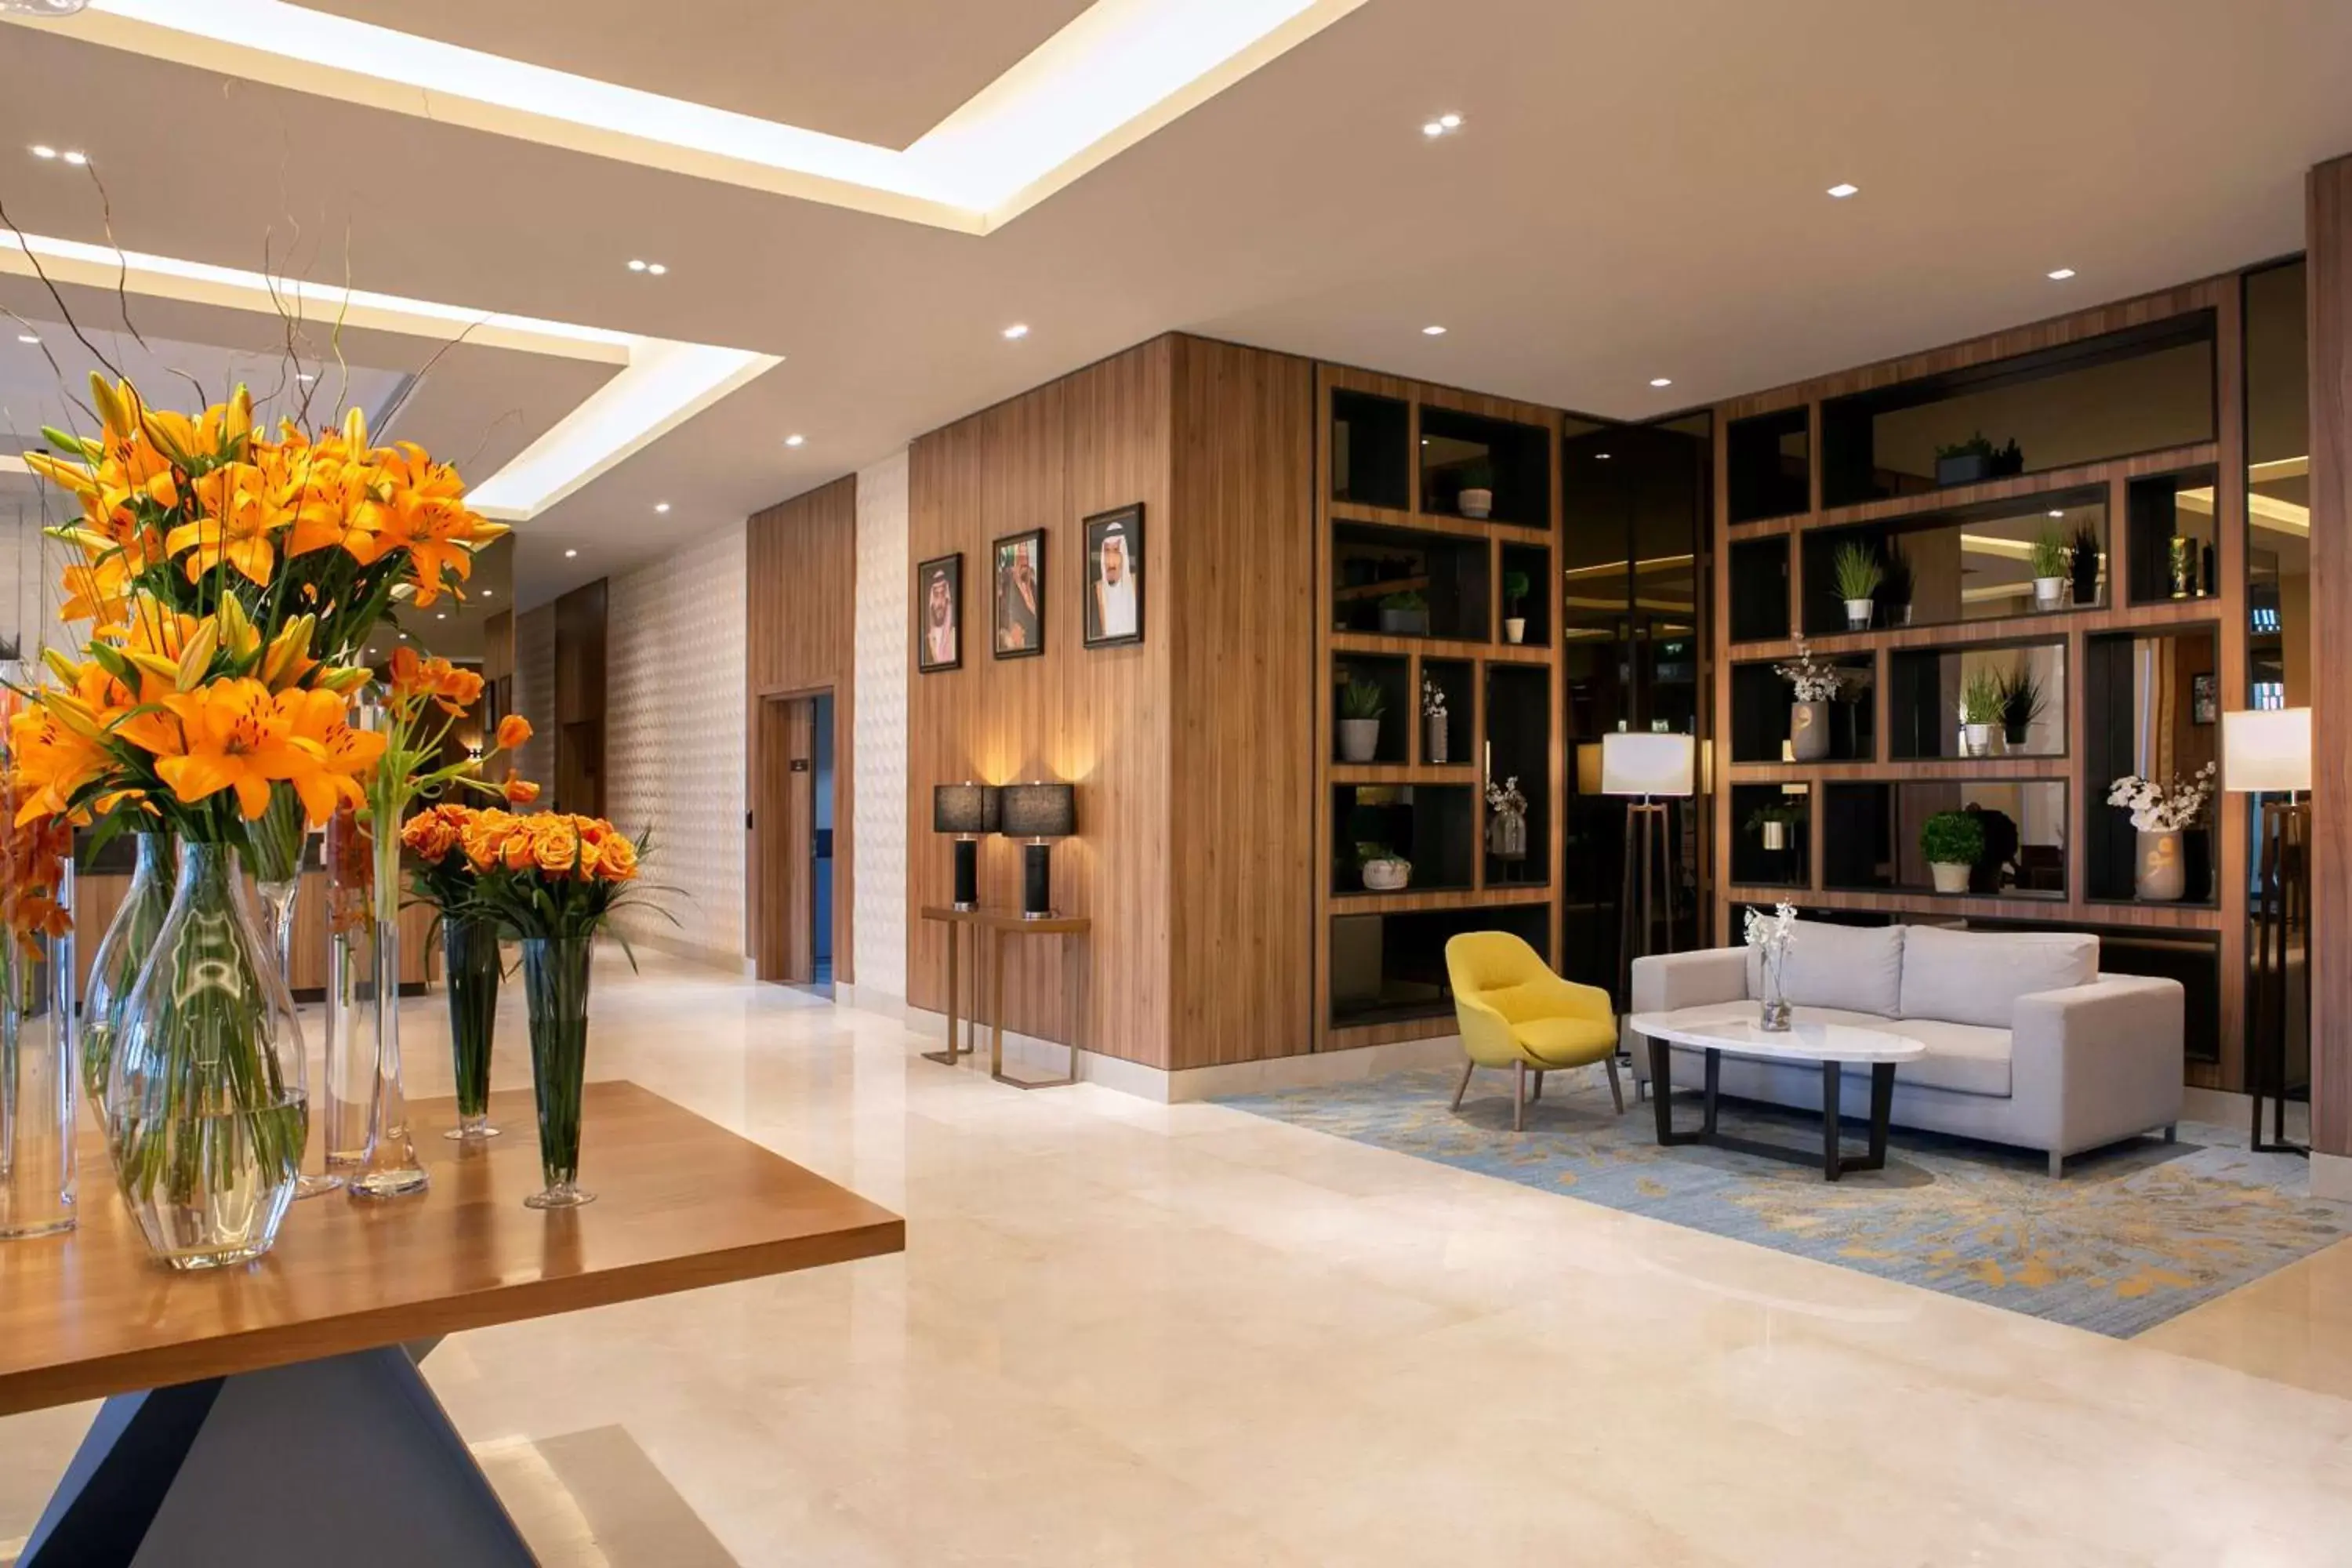 Lobby or reception, Lobby/Reception in Hilton Garden Inn Riyadh Financial District